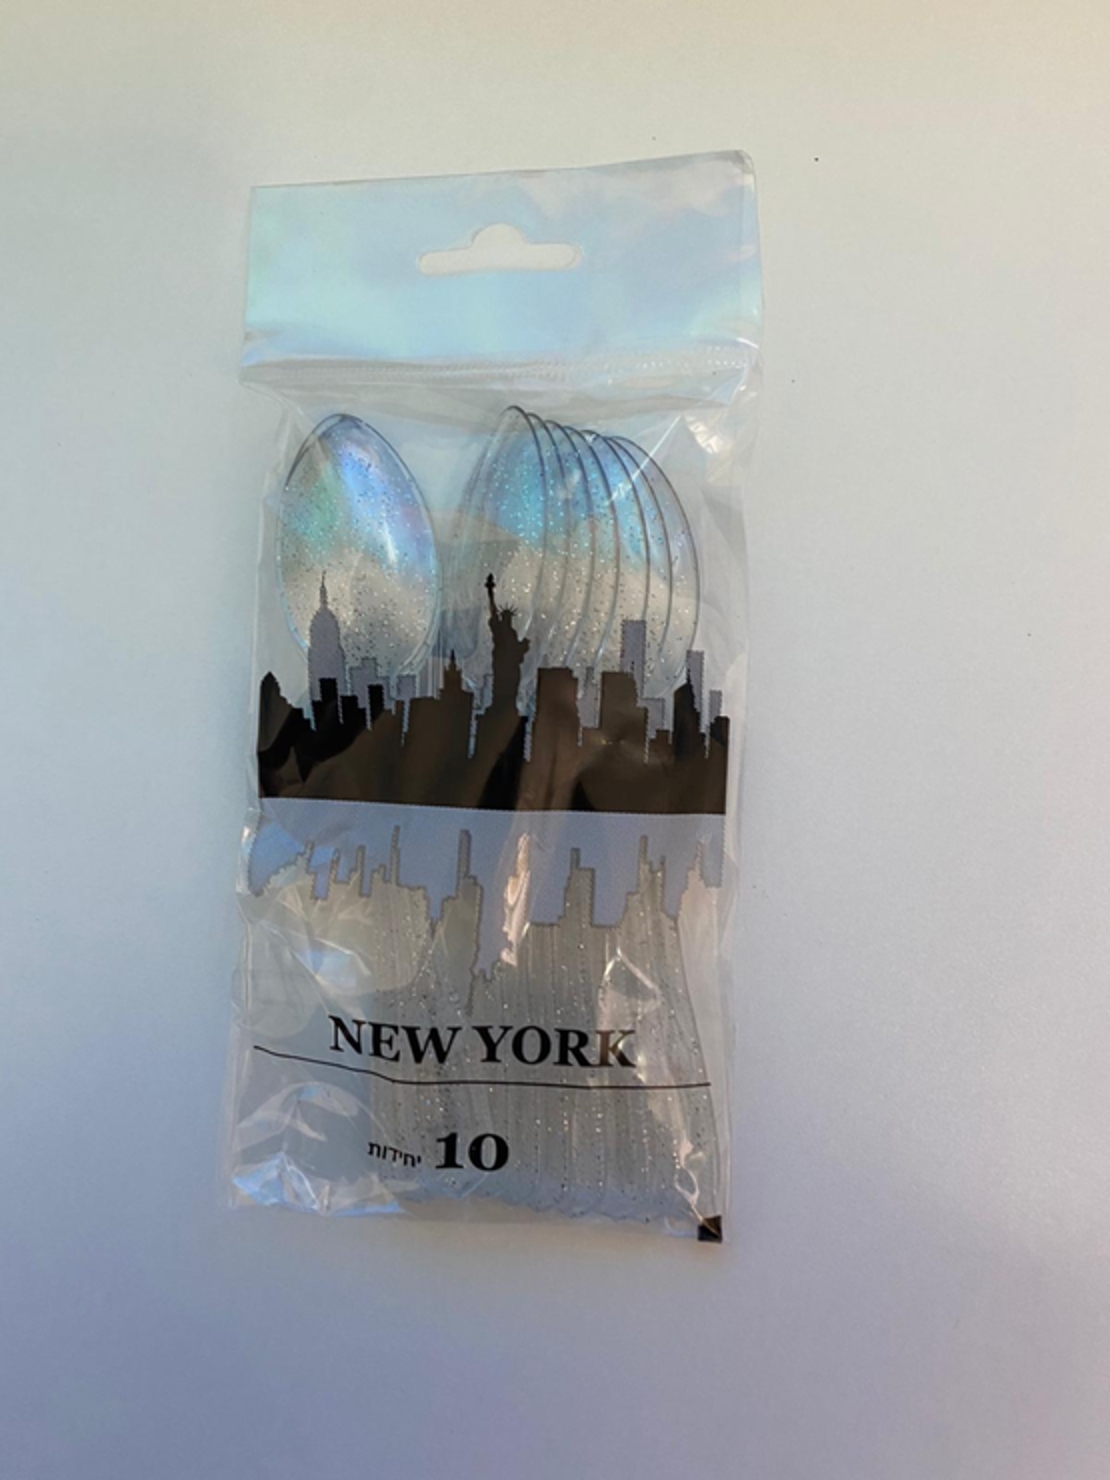 כפית ניו יורק - כסף נצנצים